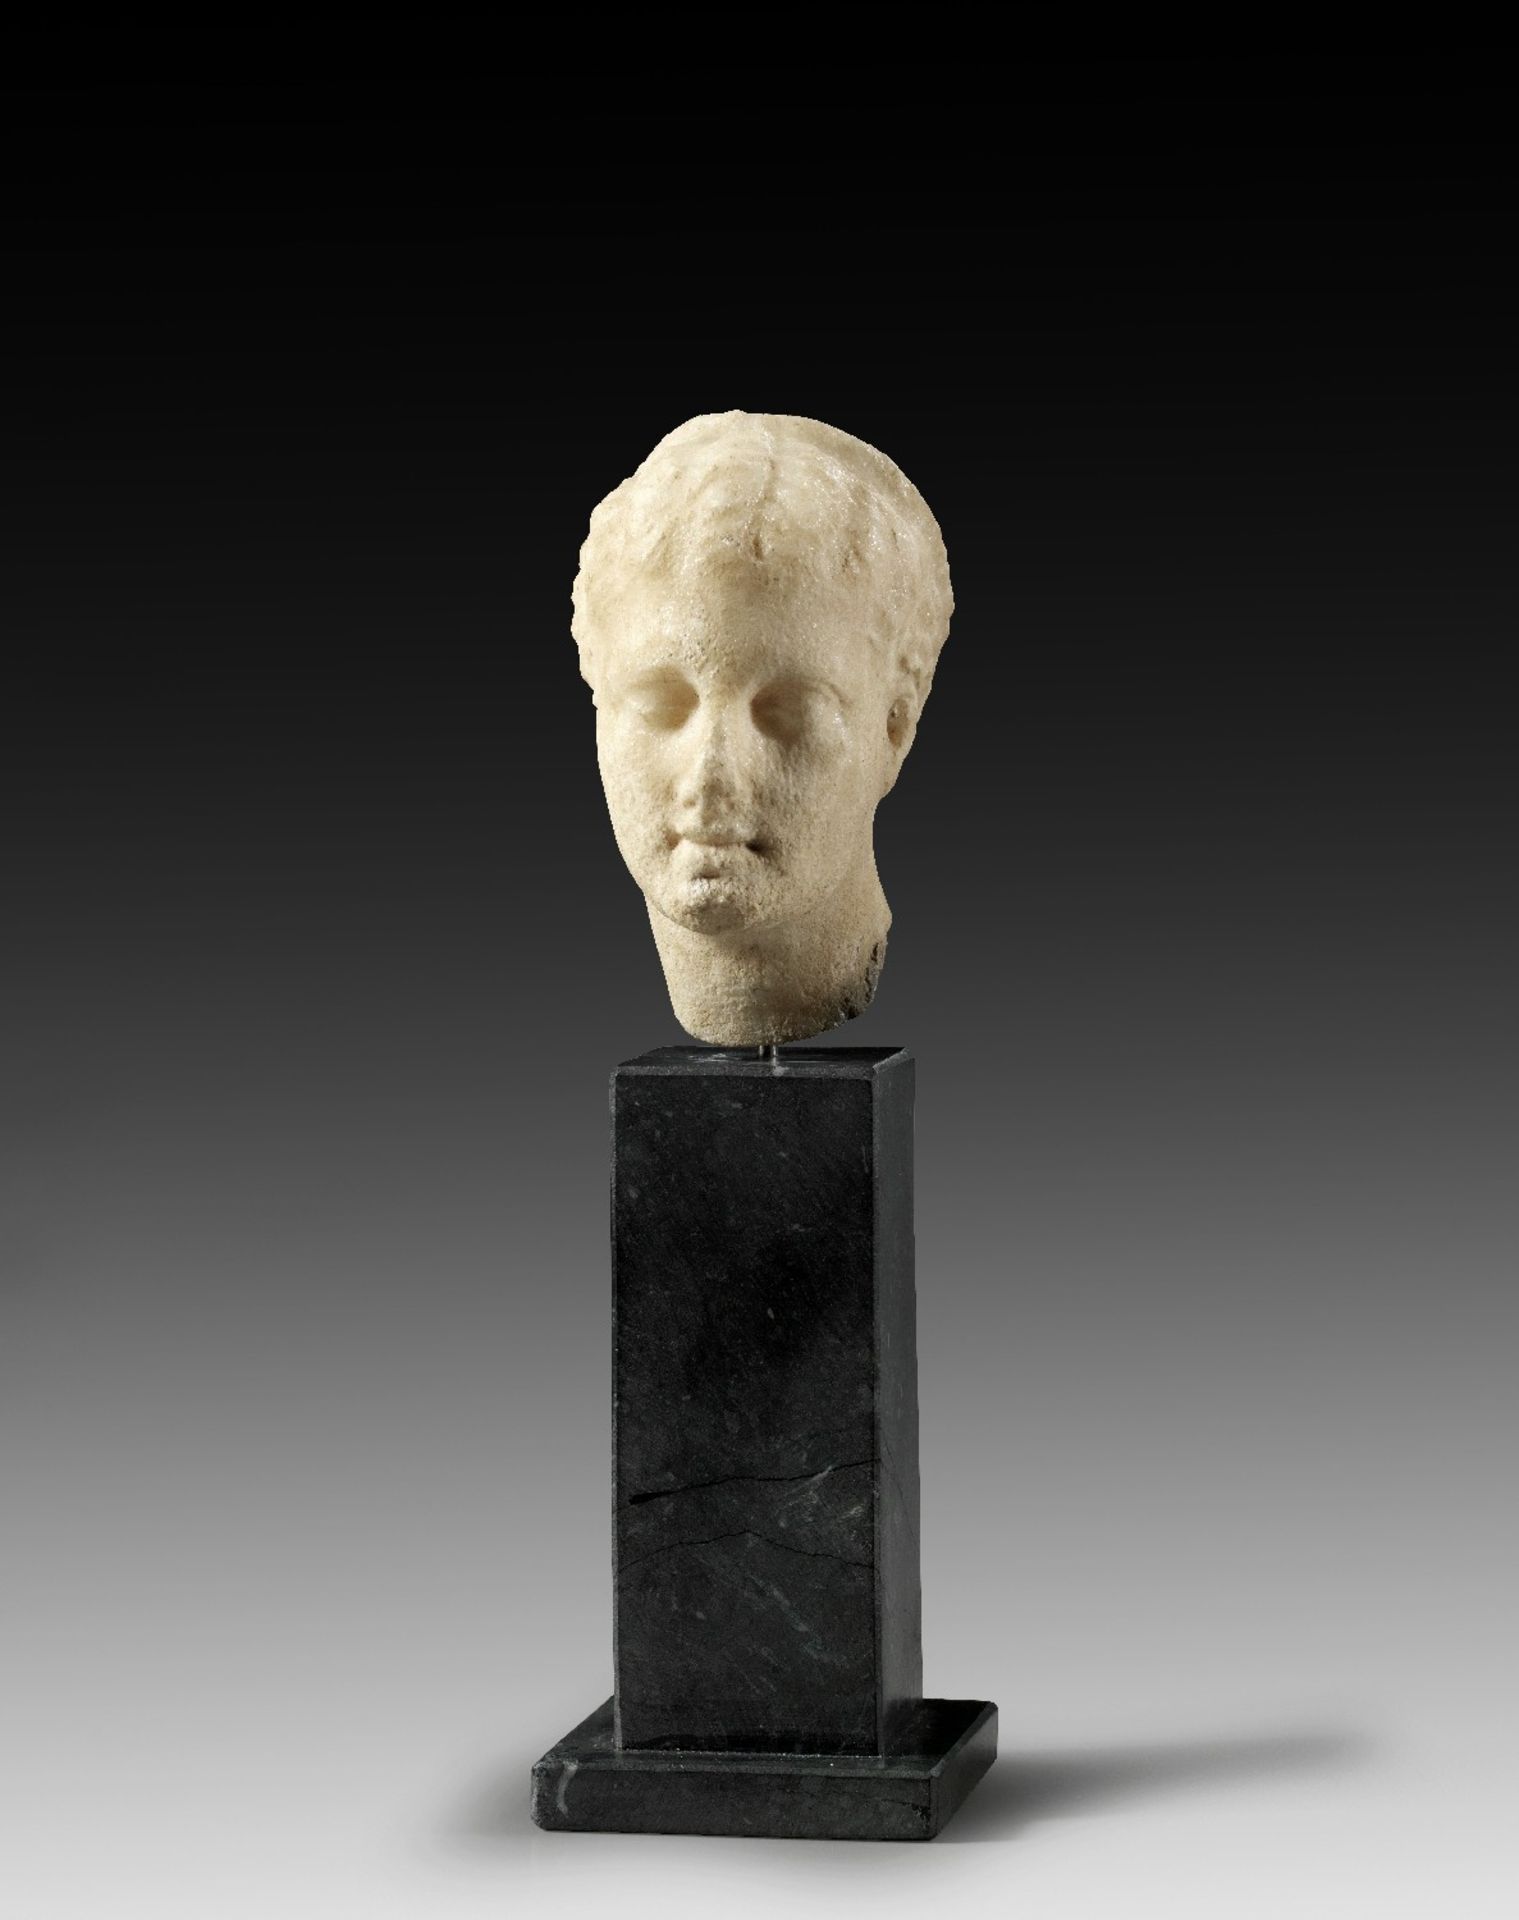 Hellenistischer Mädchenkopf. 3. - 2. Jh. v. Chr. H 9cm. Weißer, feinkristalliner Marmor. Schlankes